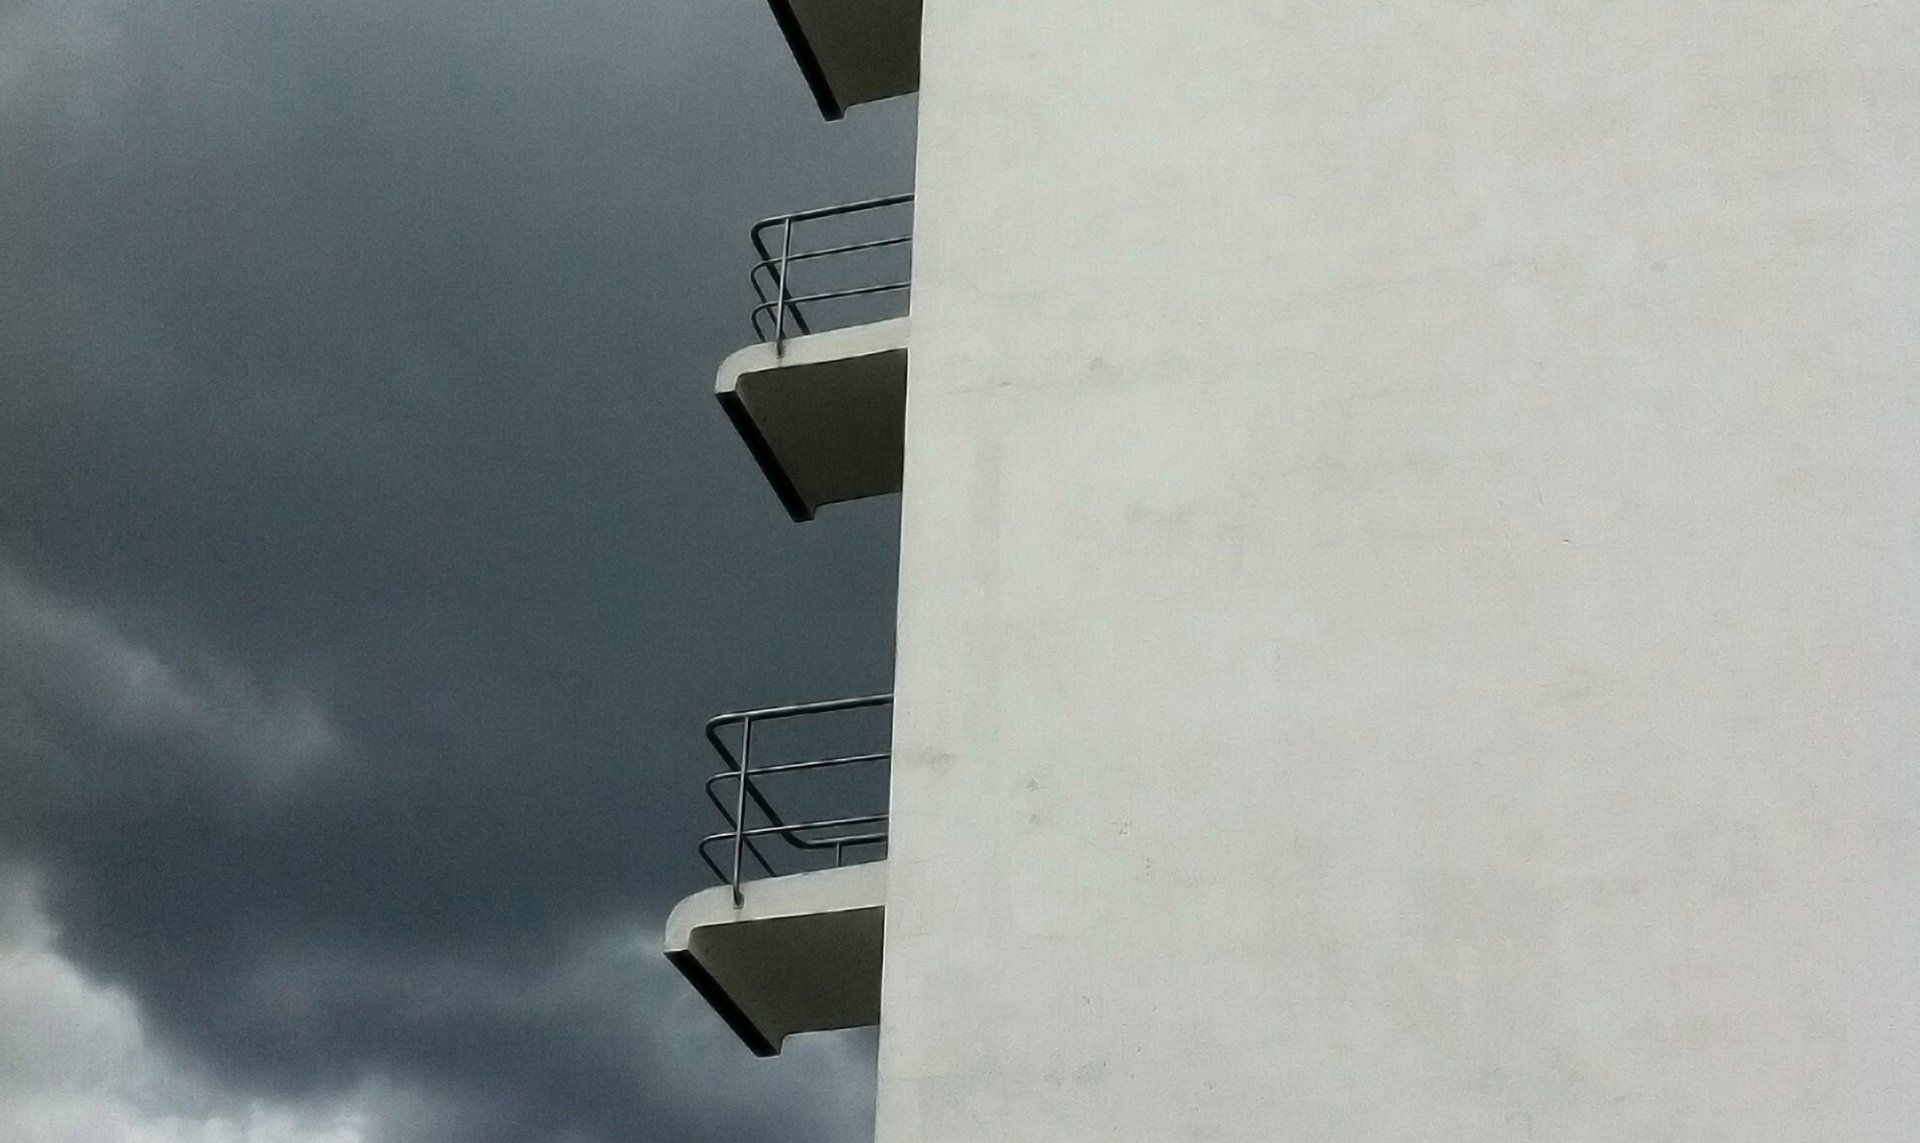 Bauhaus-Schule, Dessau, 2017